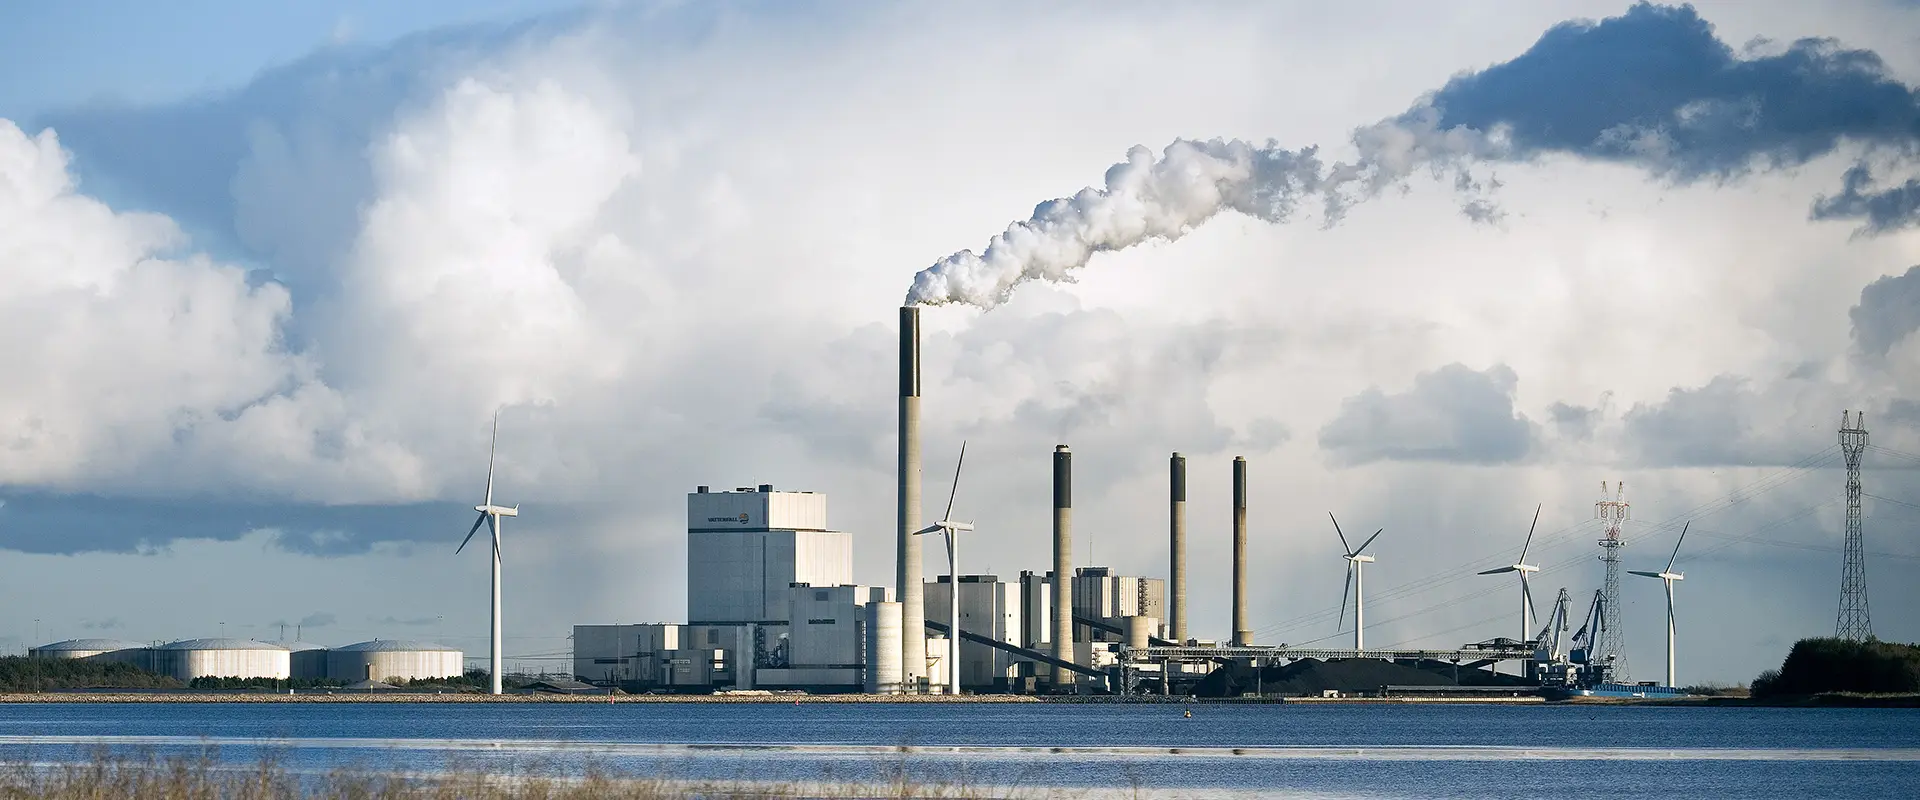 Une centrale électrique au charbon, Danemark